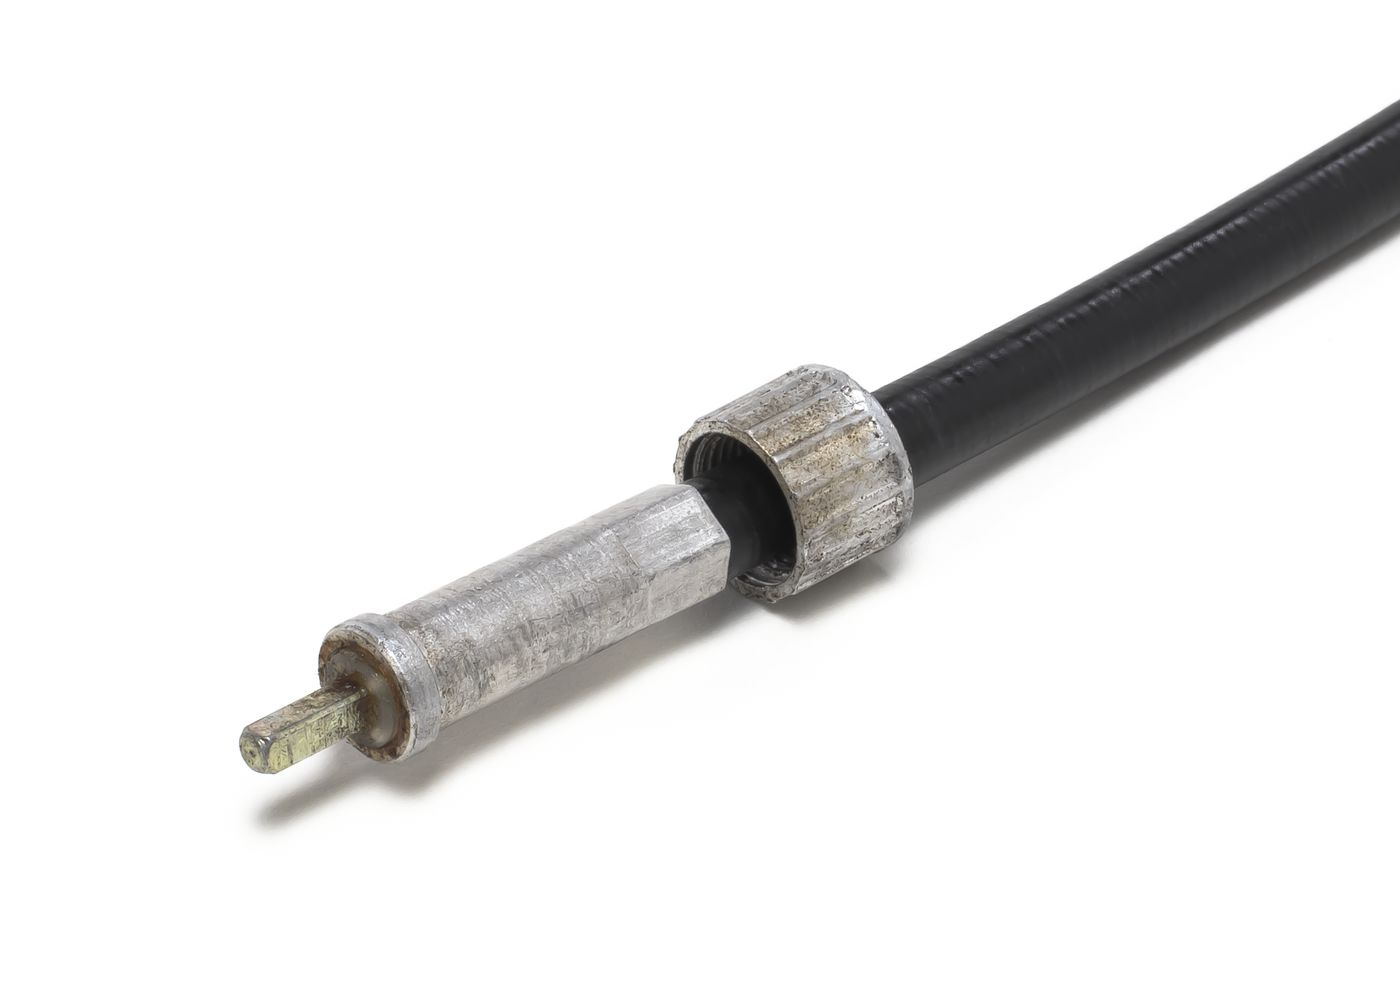 Tachowelle
Speedometer cable
Câble de compteur
Wał prędkości